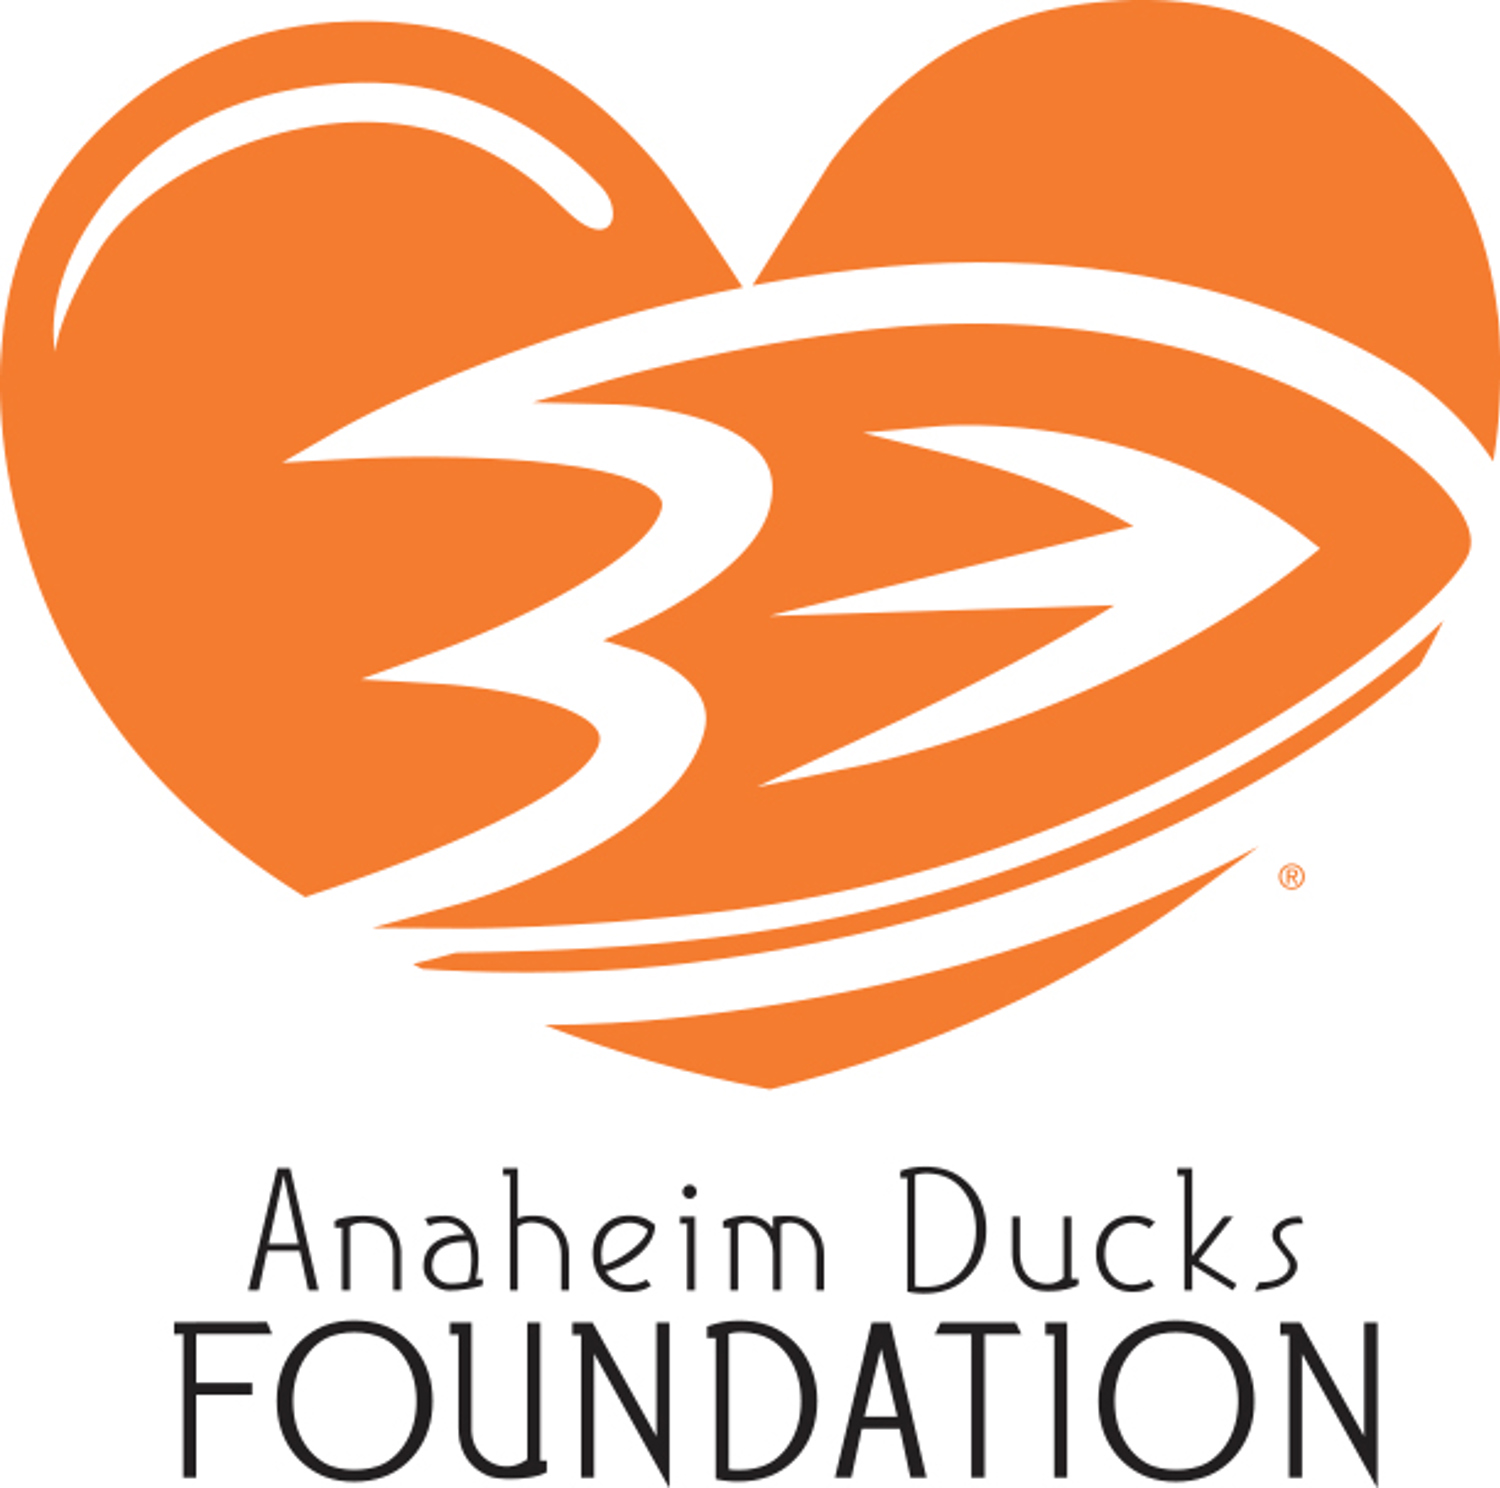 Anaheim Ducks Foundation heart logo